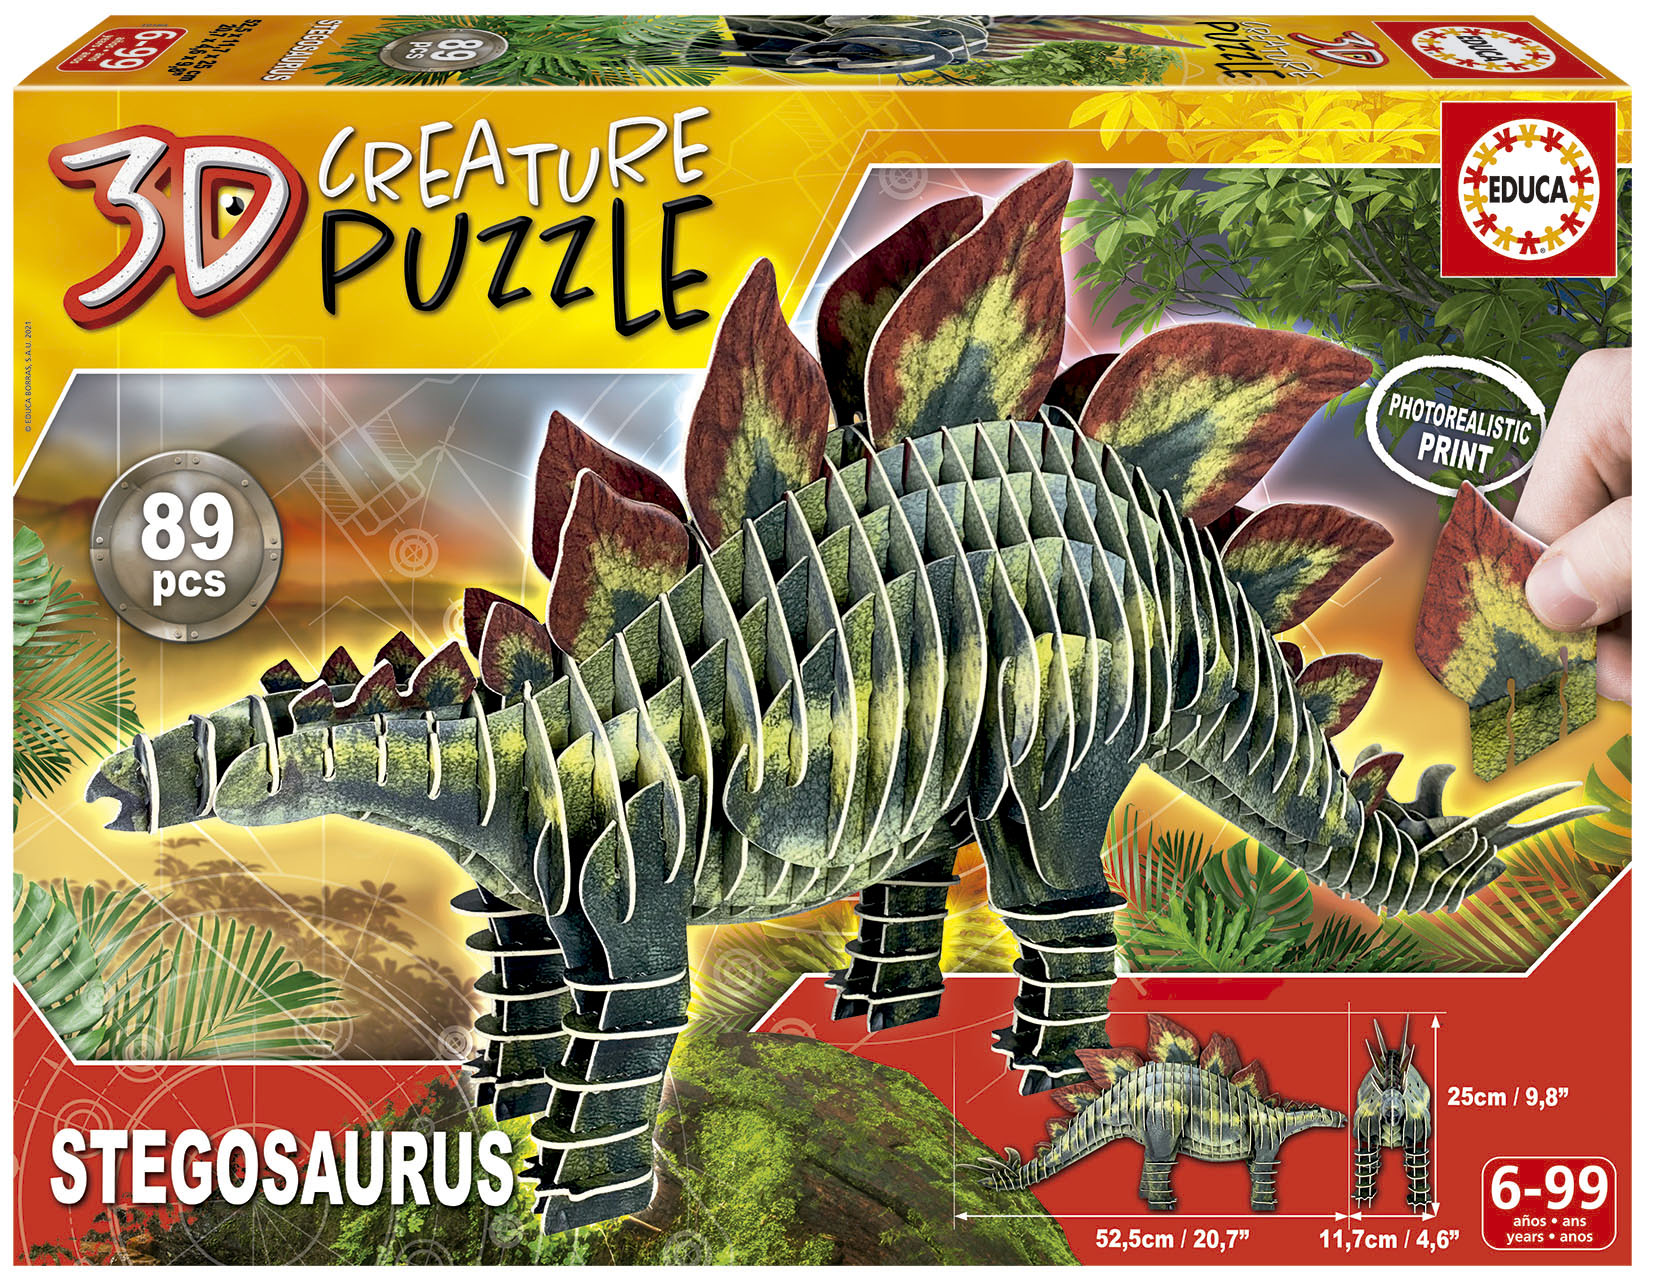 Stegosaurus Creature Puzzle Educa Borras